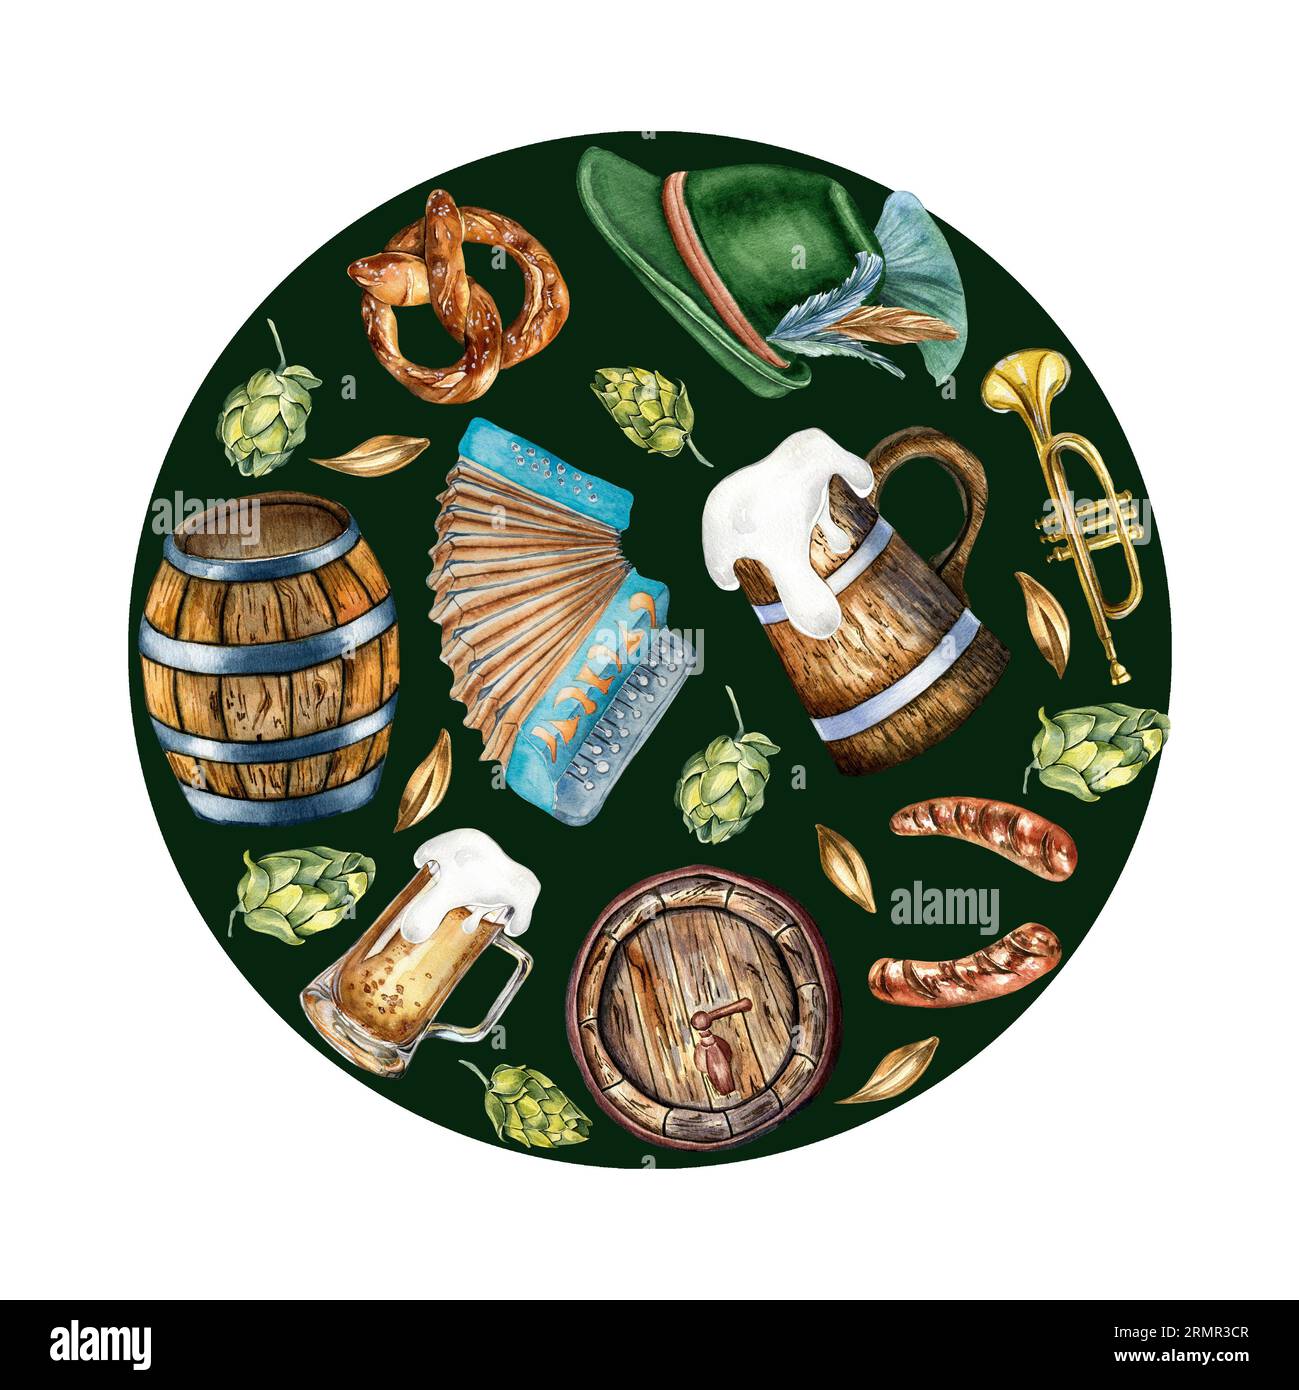 Cercle de tonneau en bois, pinte de bière, chapeau allemand, illustration aquarelle accordéon isolé sur noir. Bretzel, trompette, bière, houblon tiré à la main Banque D'Images